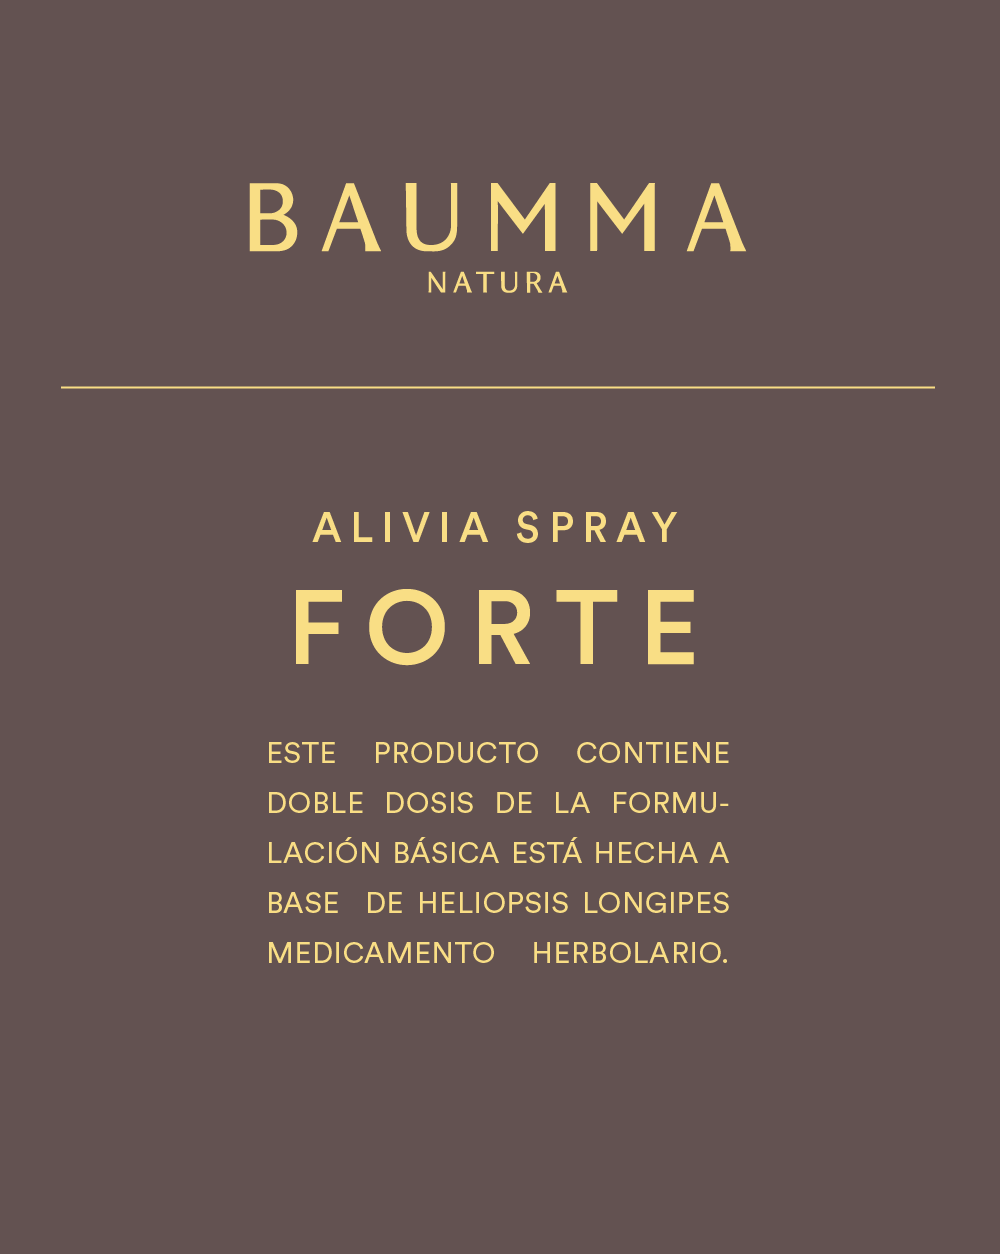 Alivia Spray Forte de Baumma